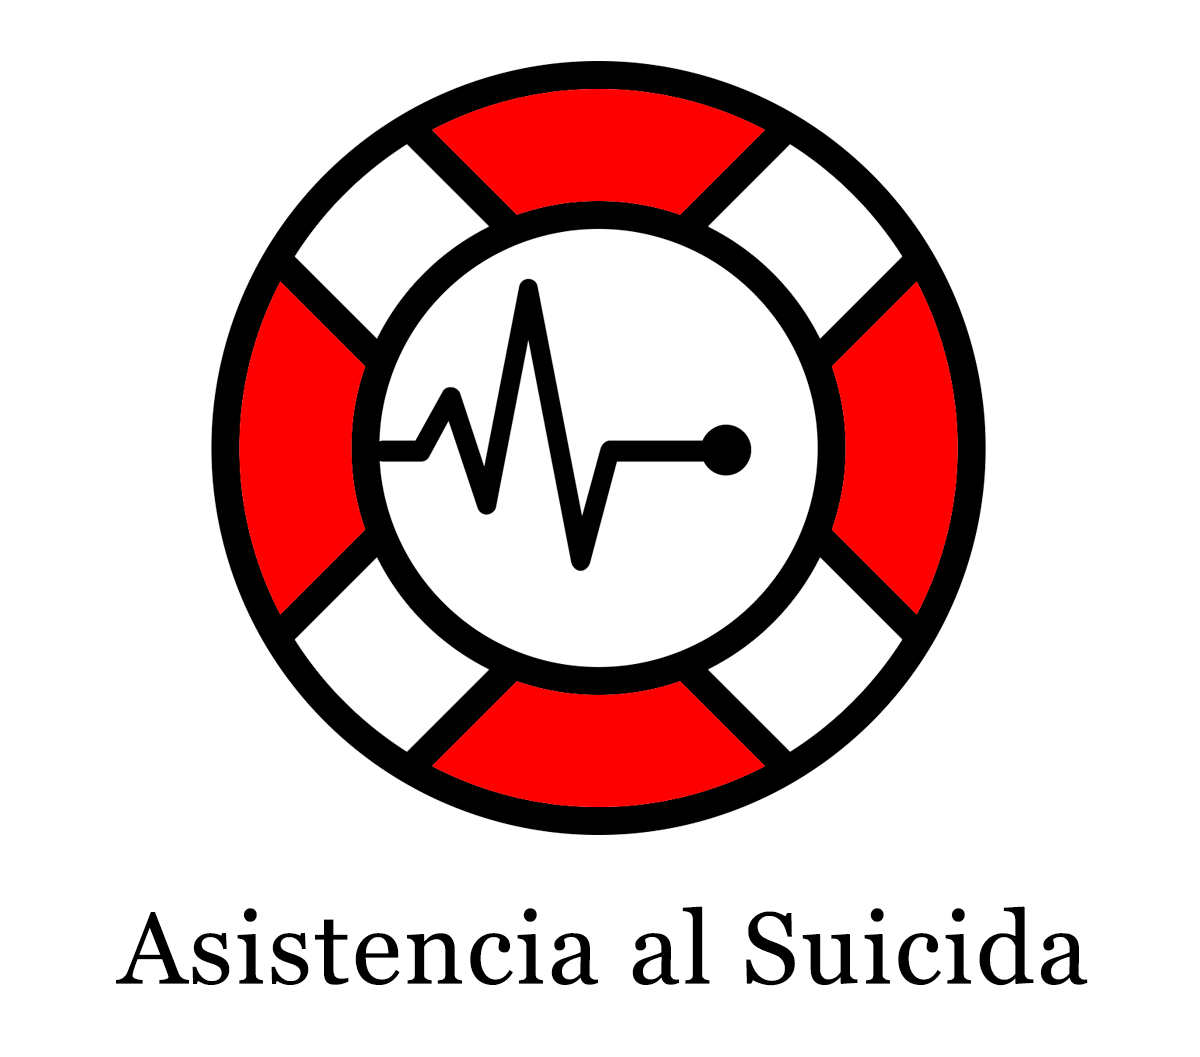 Asistencia al Suicida